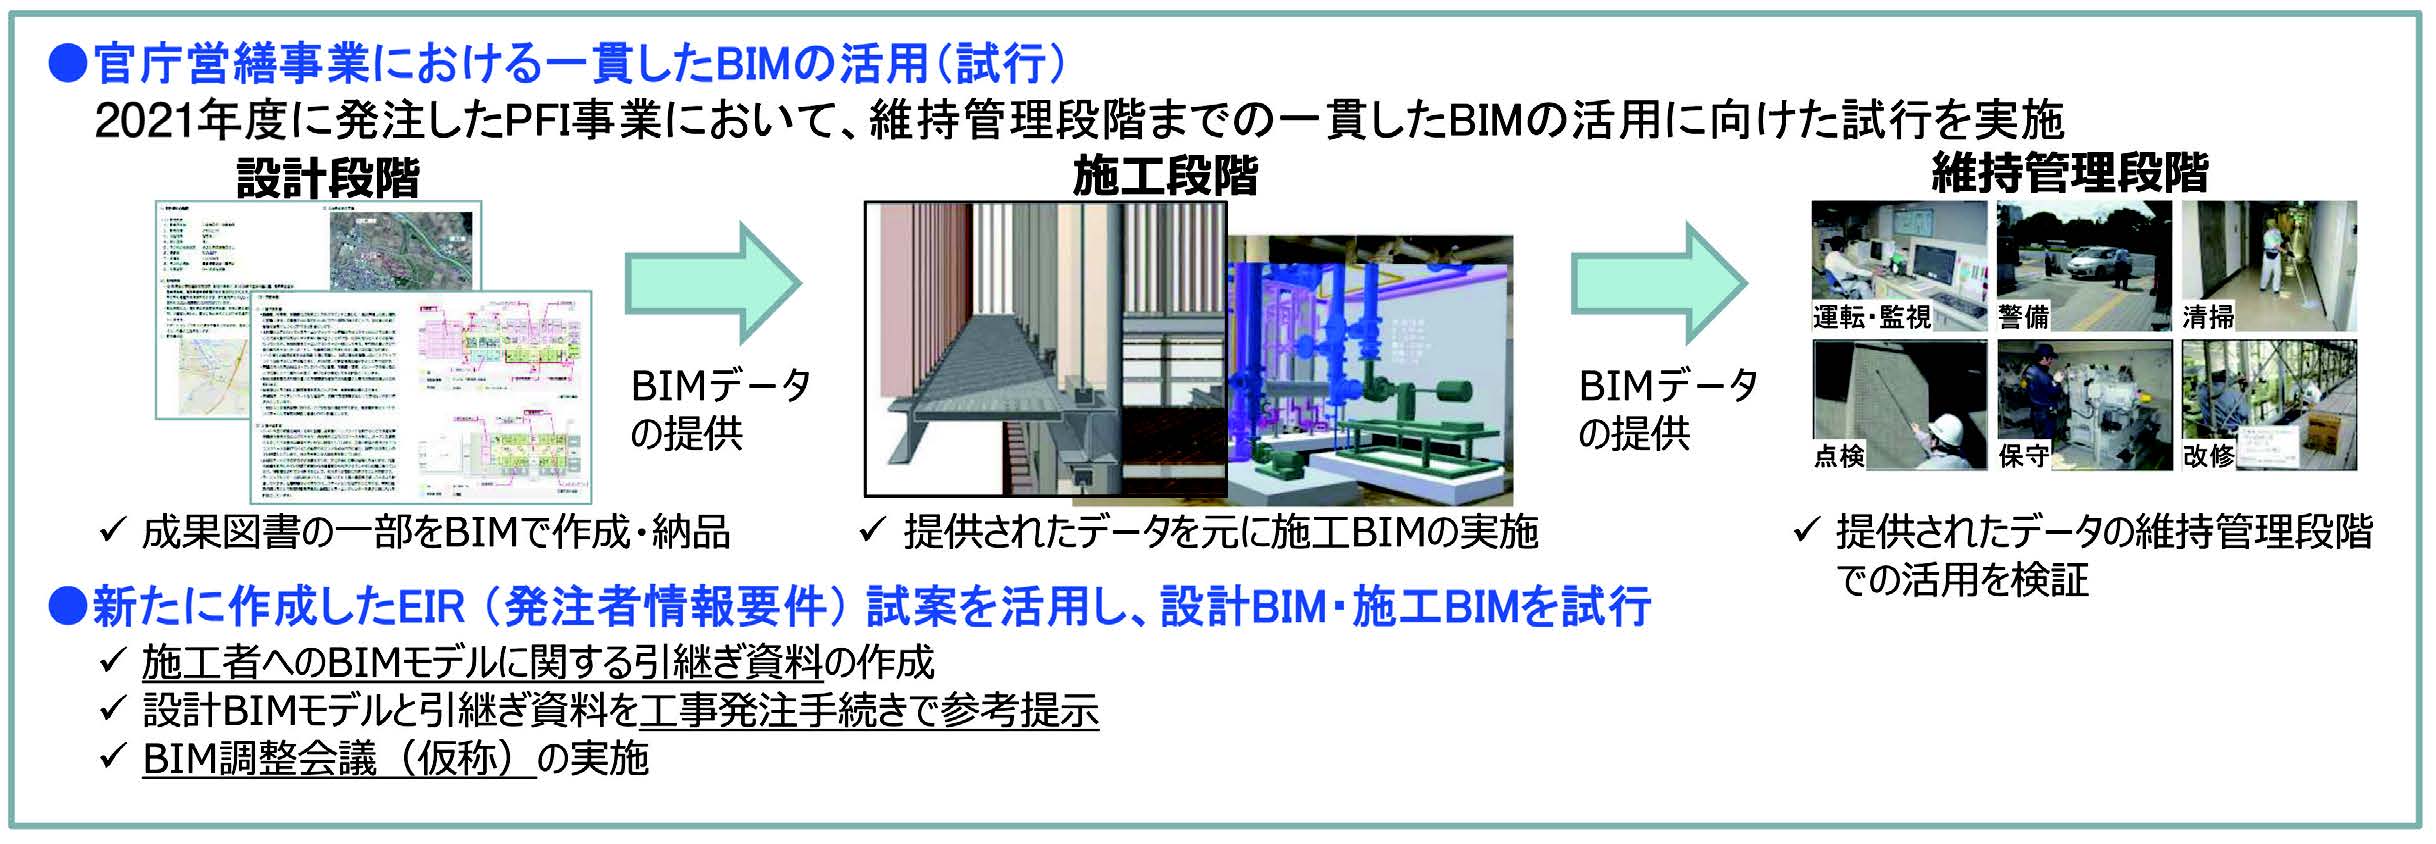 図-3　2022年度 官庁営繕事業におけるBIM活用の取り組み